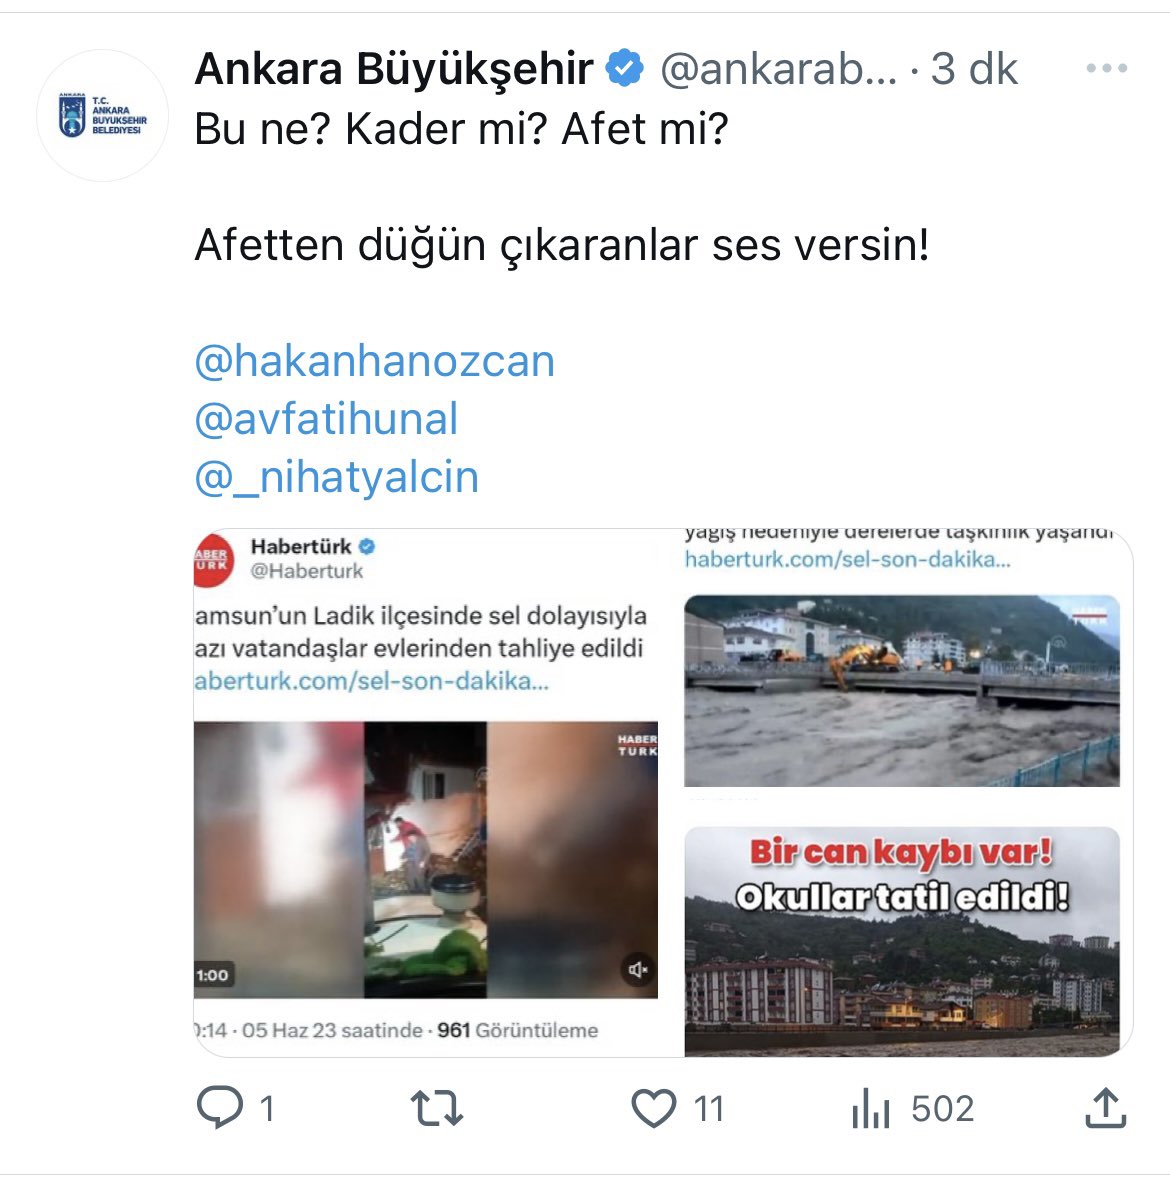 Skandal !

Ankara Büyükşehir Belediyesi sosyal medya ekibi, Trol hesaptan yapacağı paylaşımı yanlışlıkla ABB kurumsal hesabından yapınca yakayı ele verdi!

Hata farkedilip paylaşım hemen kaldırıldı.

Her algınız tek tek çöküyor!